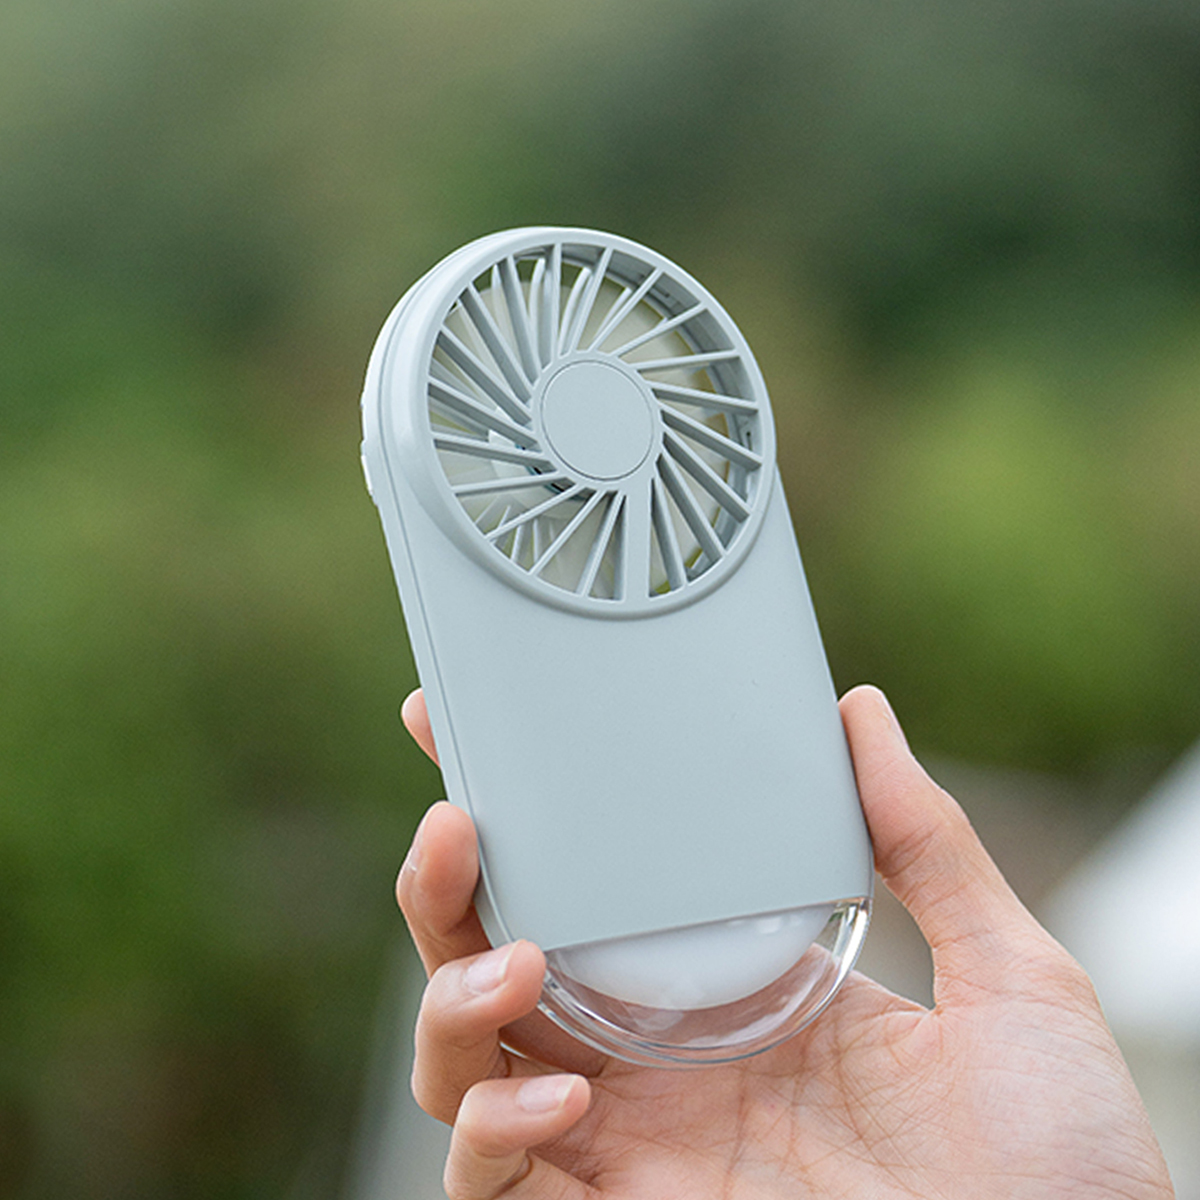 Portable Mini Fan: Your Cool Companion